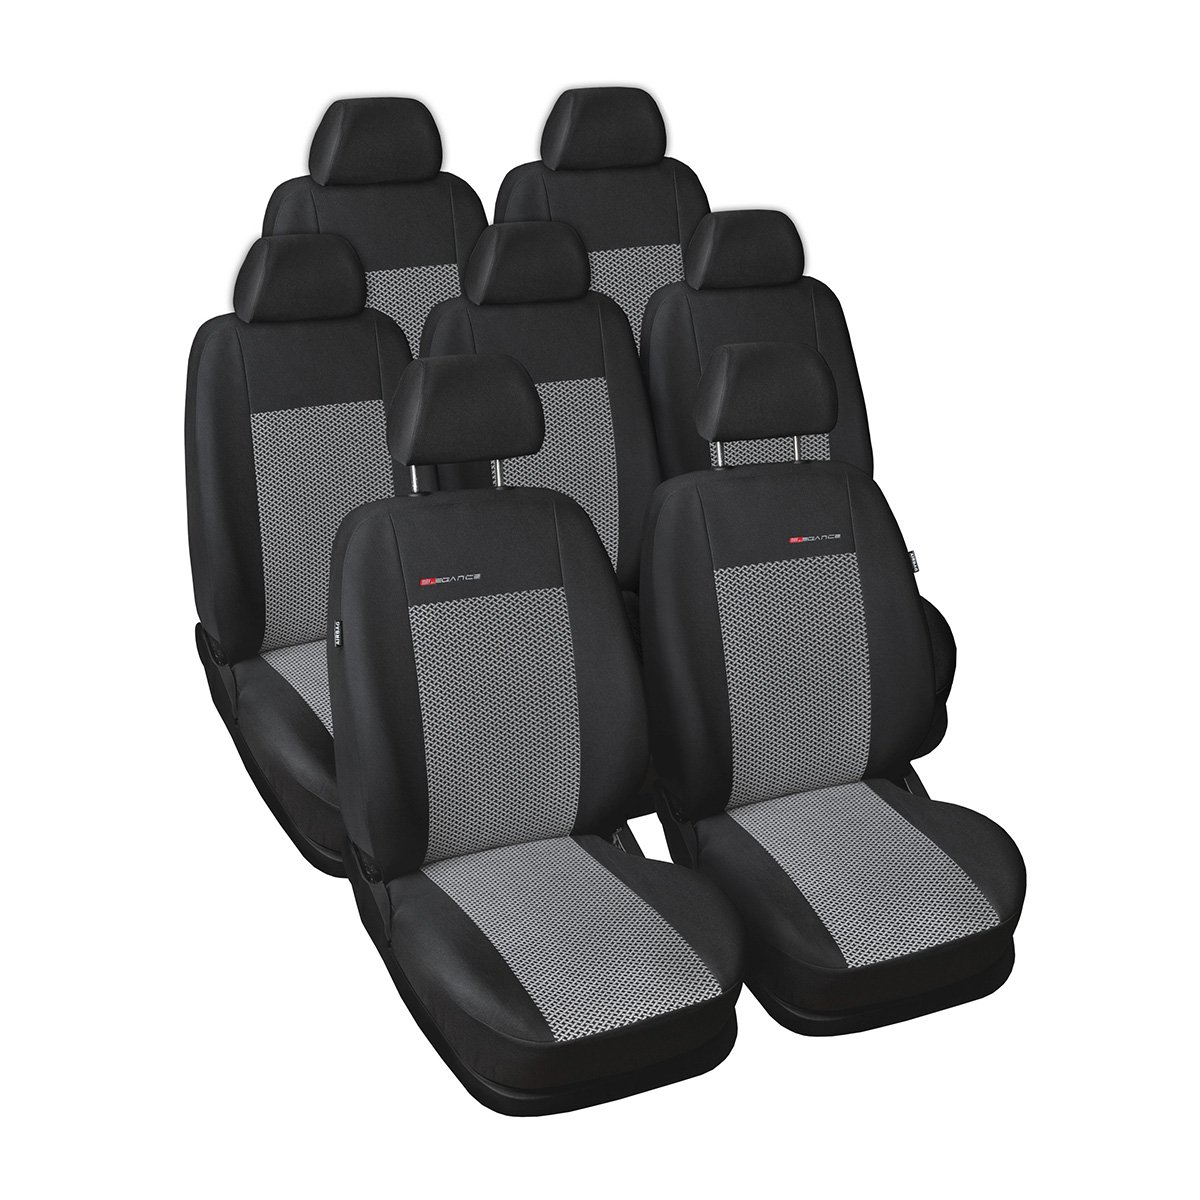 Mossa - Maßgeschneiderte Sitzbezüge Auto kompatibel mit Ford S-MAX MPV (2006-2015) - 7 Sitze - Autositzbezüge Schonbezüge für Autositze - E2 von Mossa